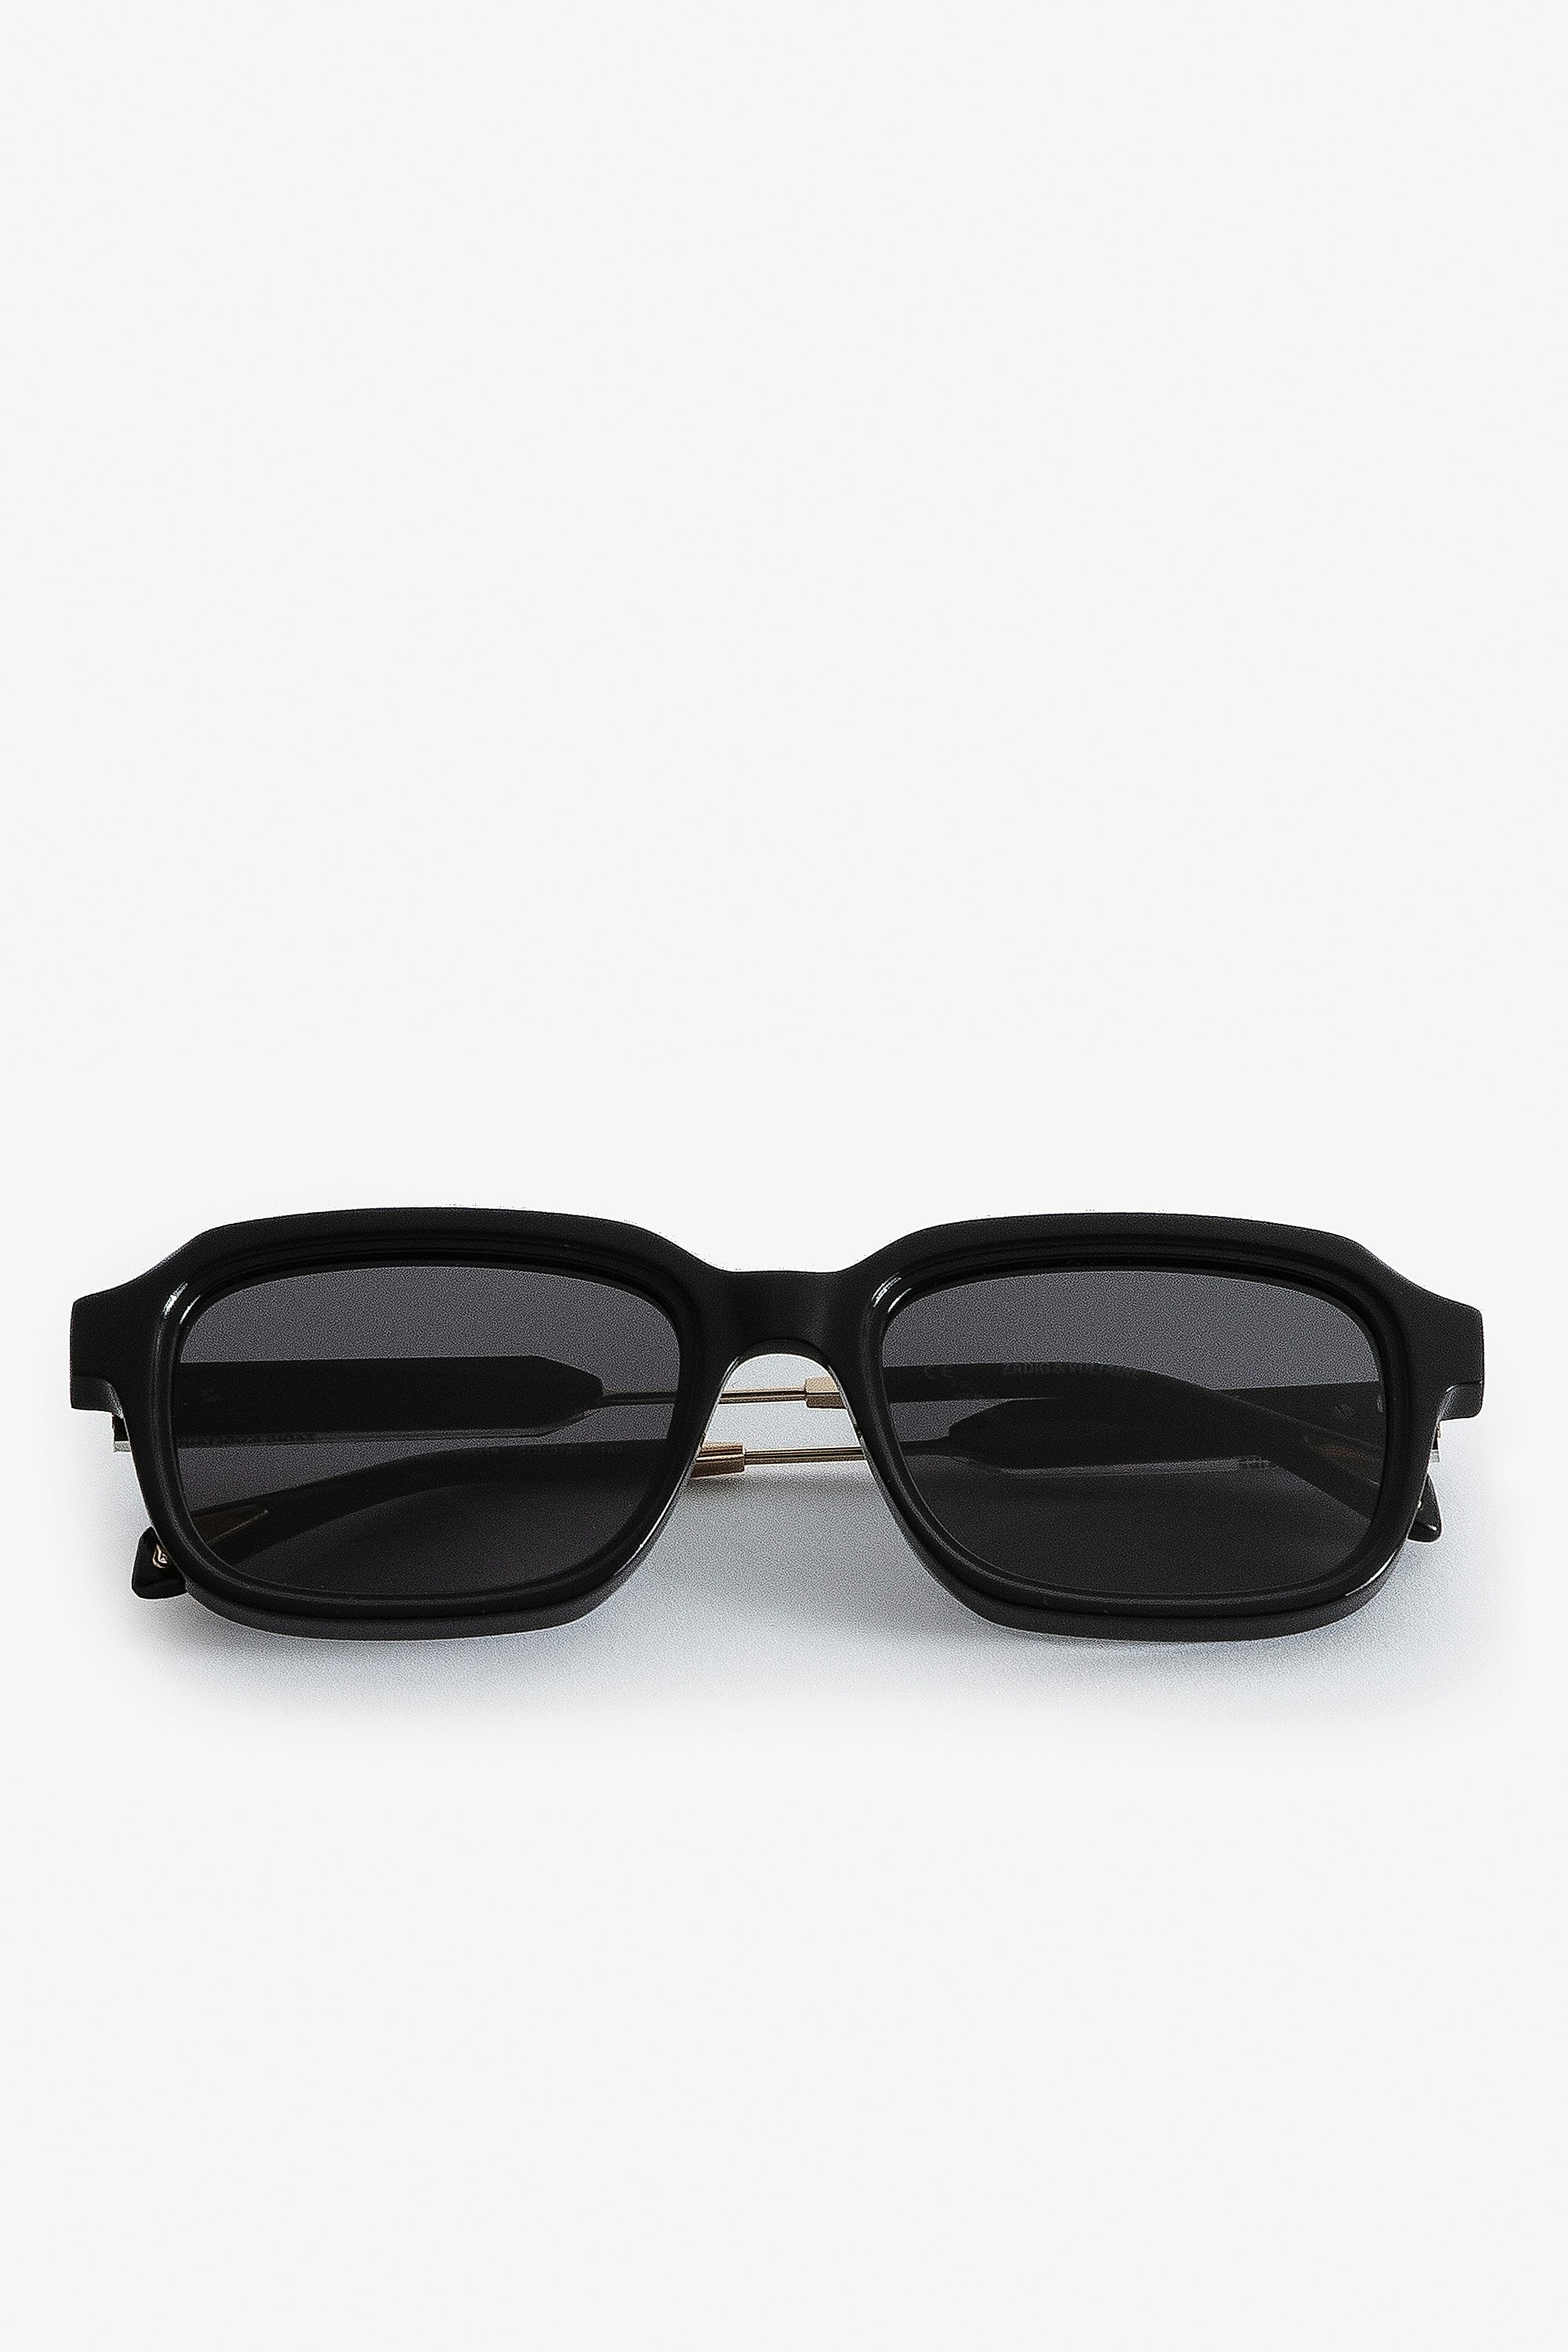 Sonnenbrille ZV Squared Unisex-Sonnenbrille aus schwarzem Acetat in Squared-Form.